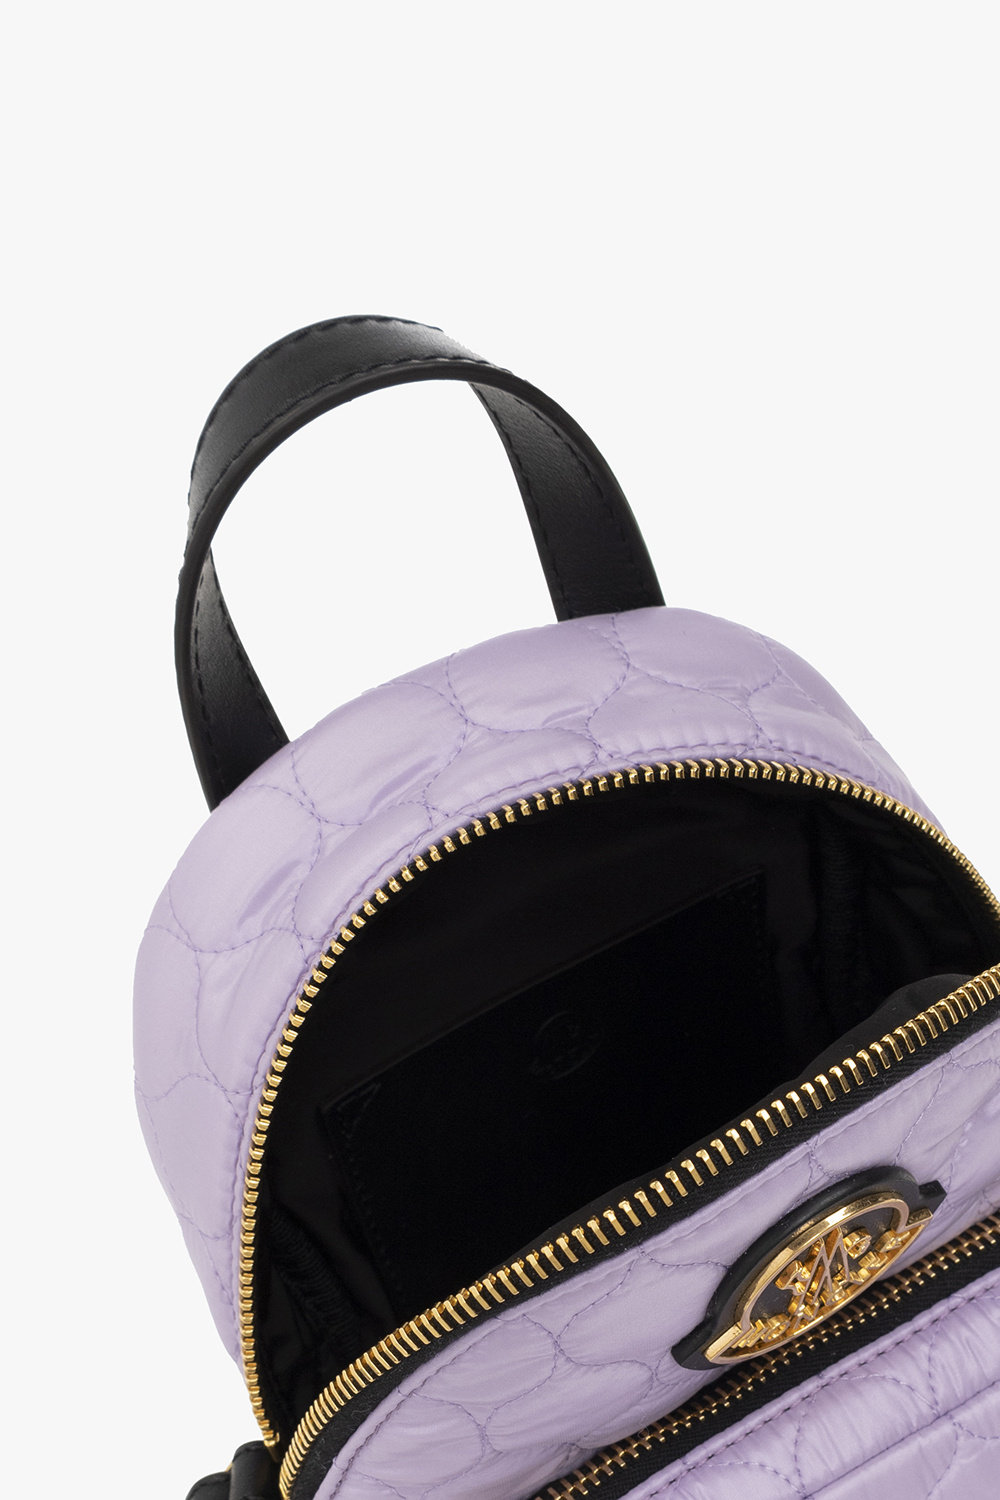 Moncler ‘Kilia Small’ shoulder Preta bag